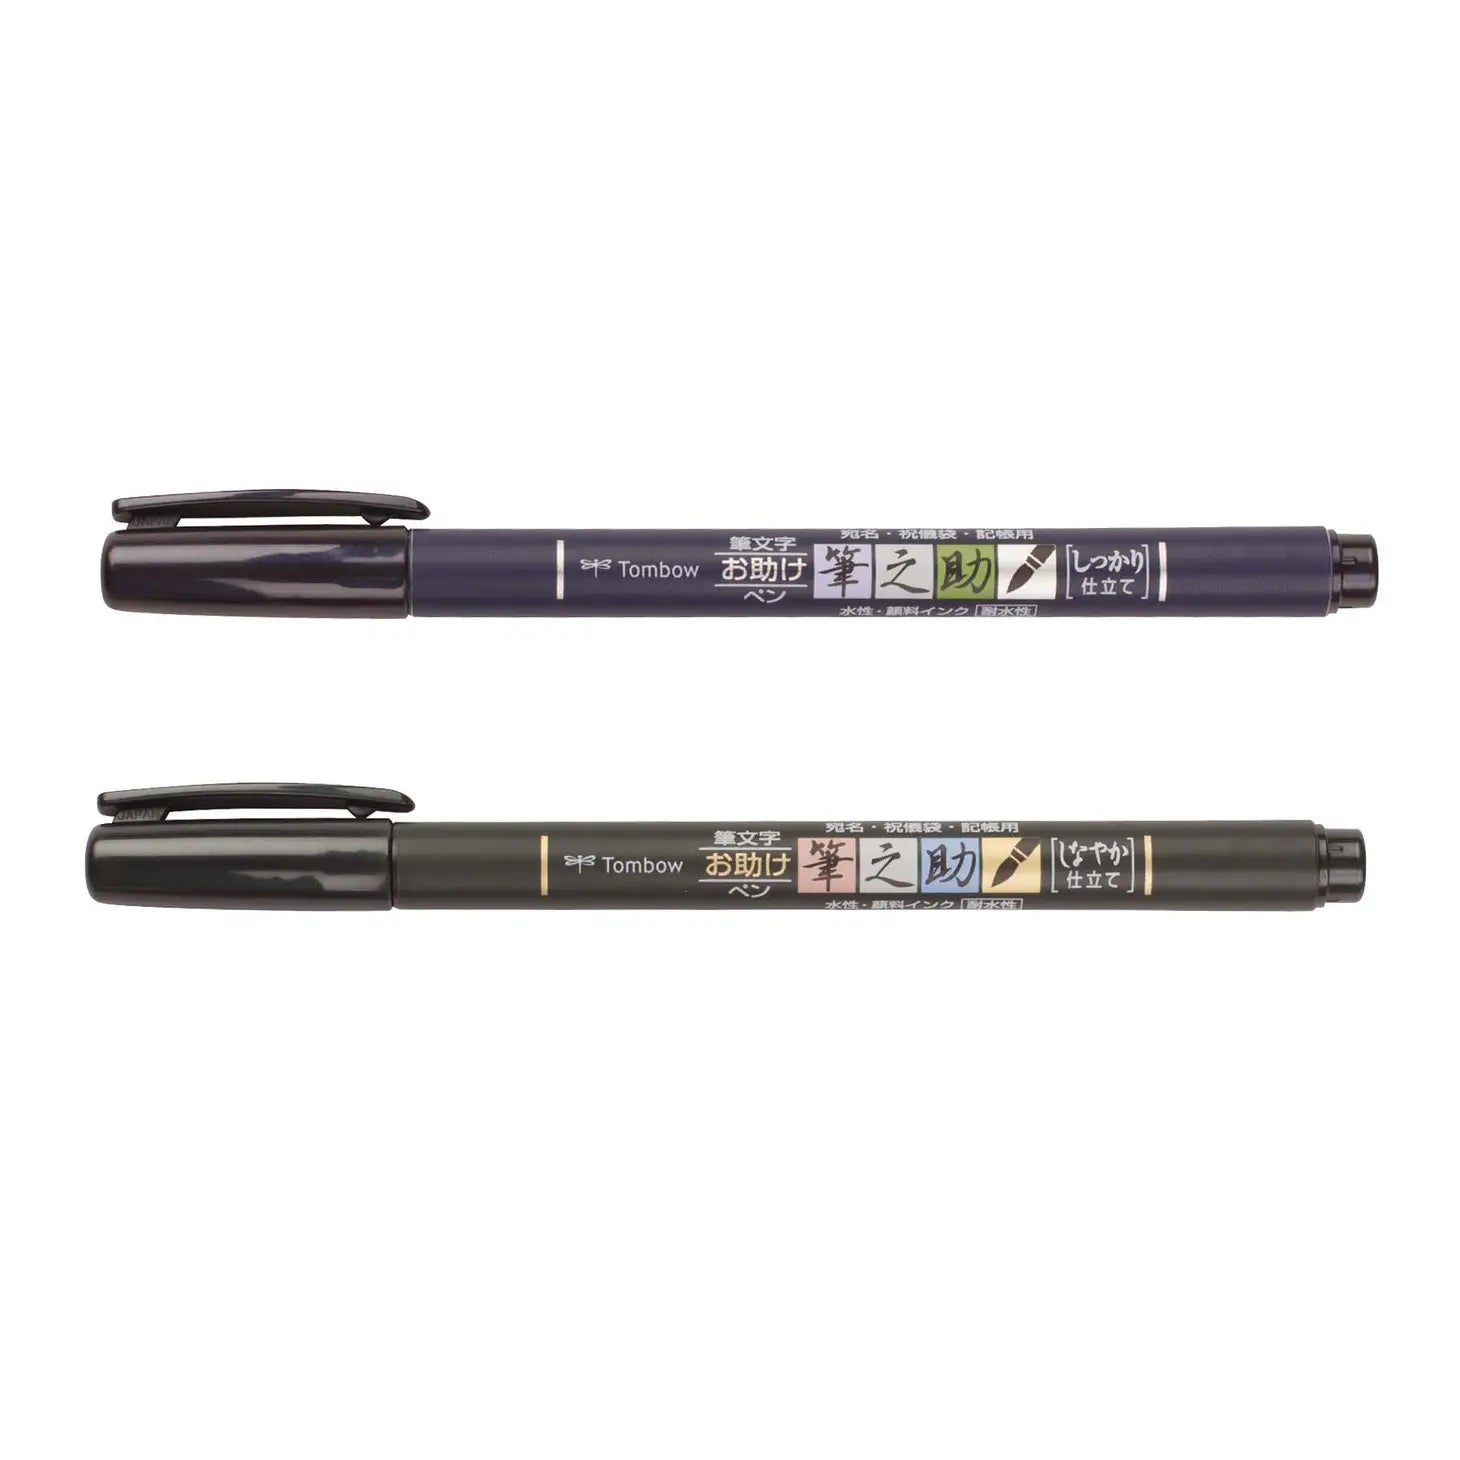 Tombow Fudenosuke Calligraphy Brush Pens Set